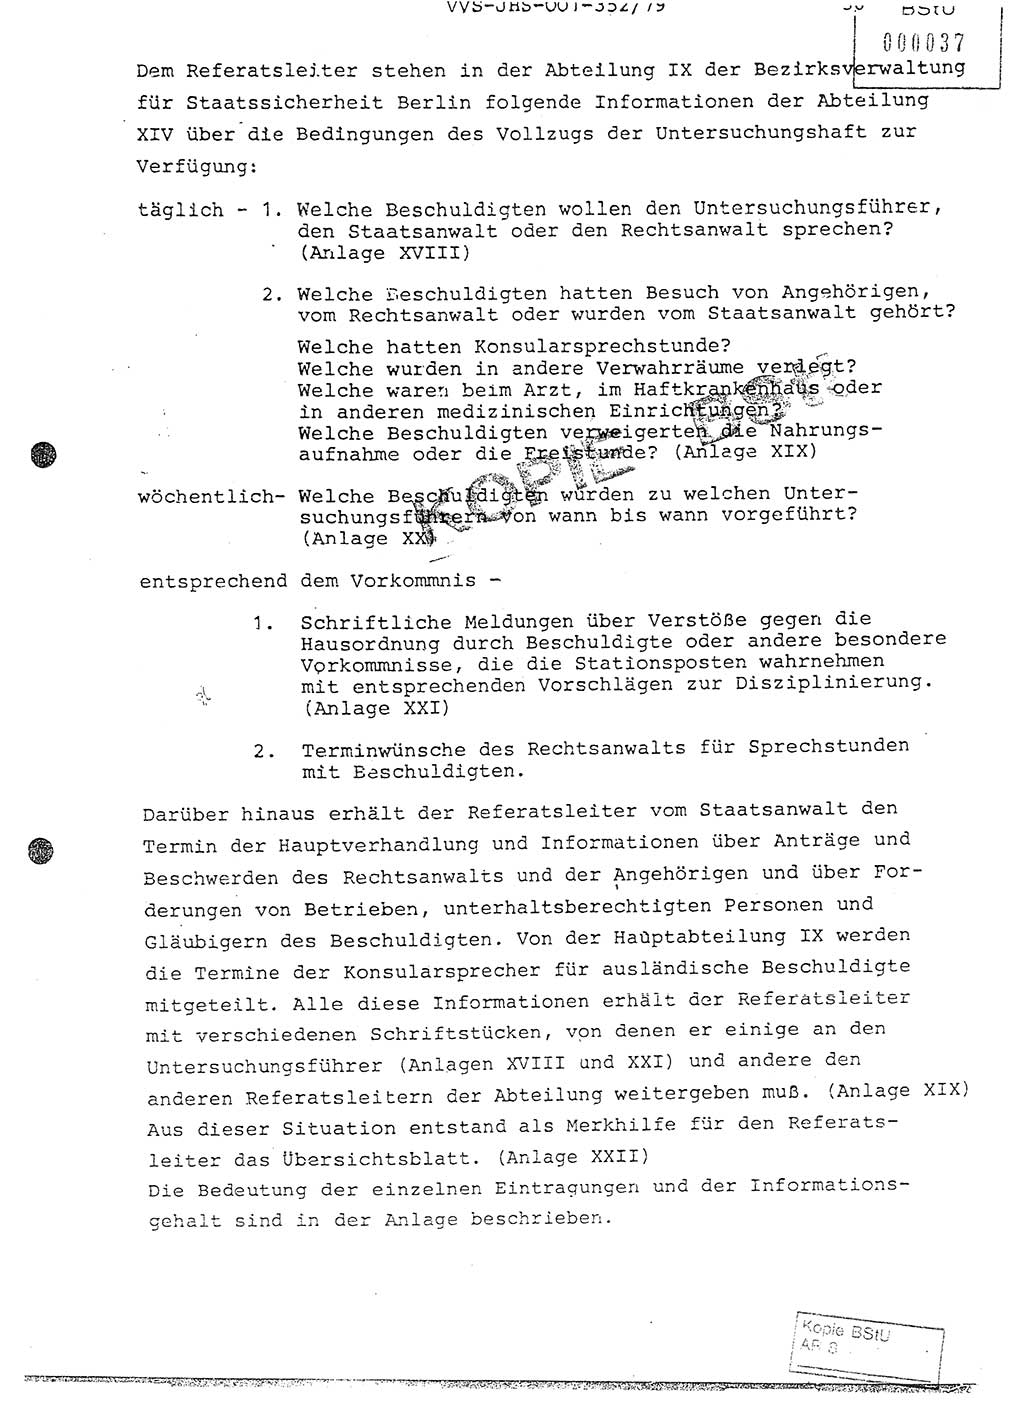 Diplomarbeit Hauptmann Peter Wittum (BV Bln. Abt. HA Ⅸ), Ministerium für Staatssicherheit (MfS) [Deutsche Demokratische Republik (DDR)], Juristische Hochschule (JHS), Vertrauliche Verschlußsache (VVS) o001-352/79, Potsdam 1979, Seite 36 (Dipl.-Arb. MfS DDR JHS VVS o001-352/79 1979, S. 36)